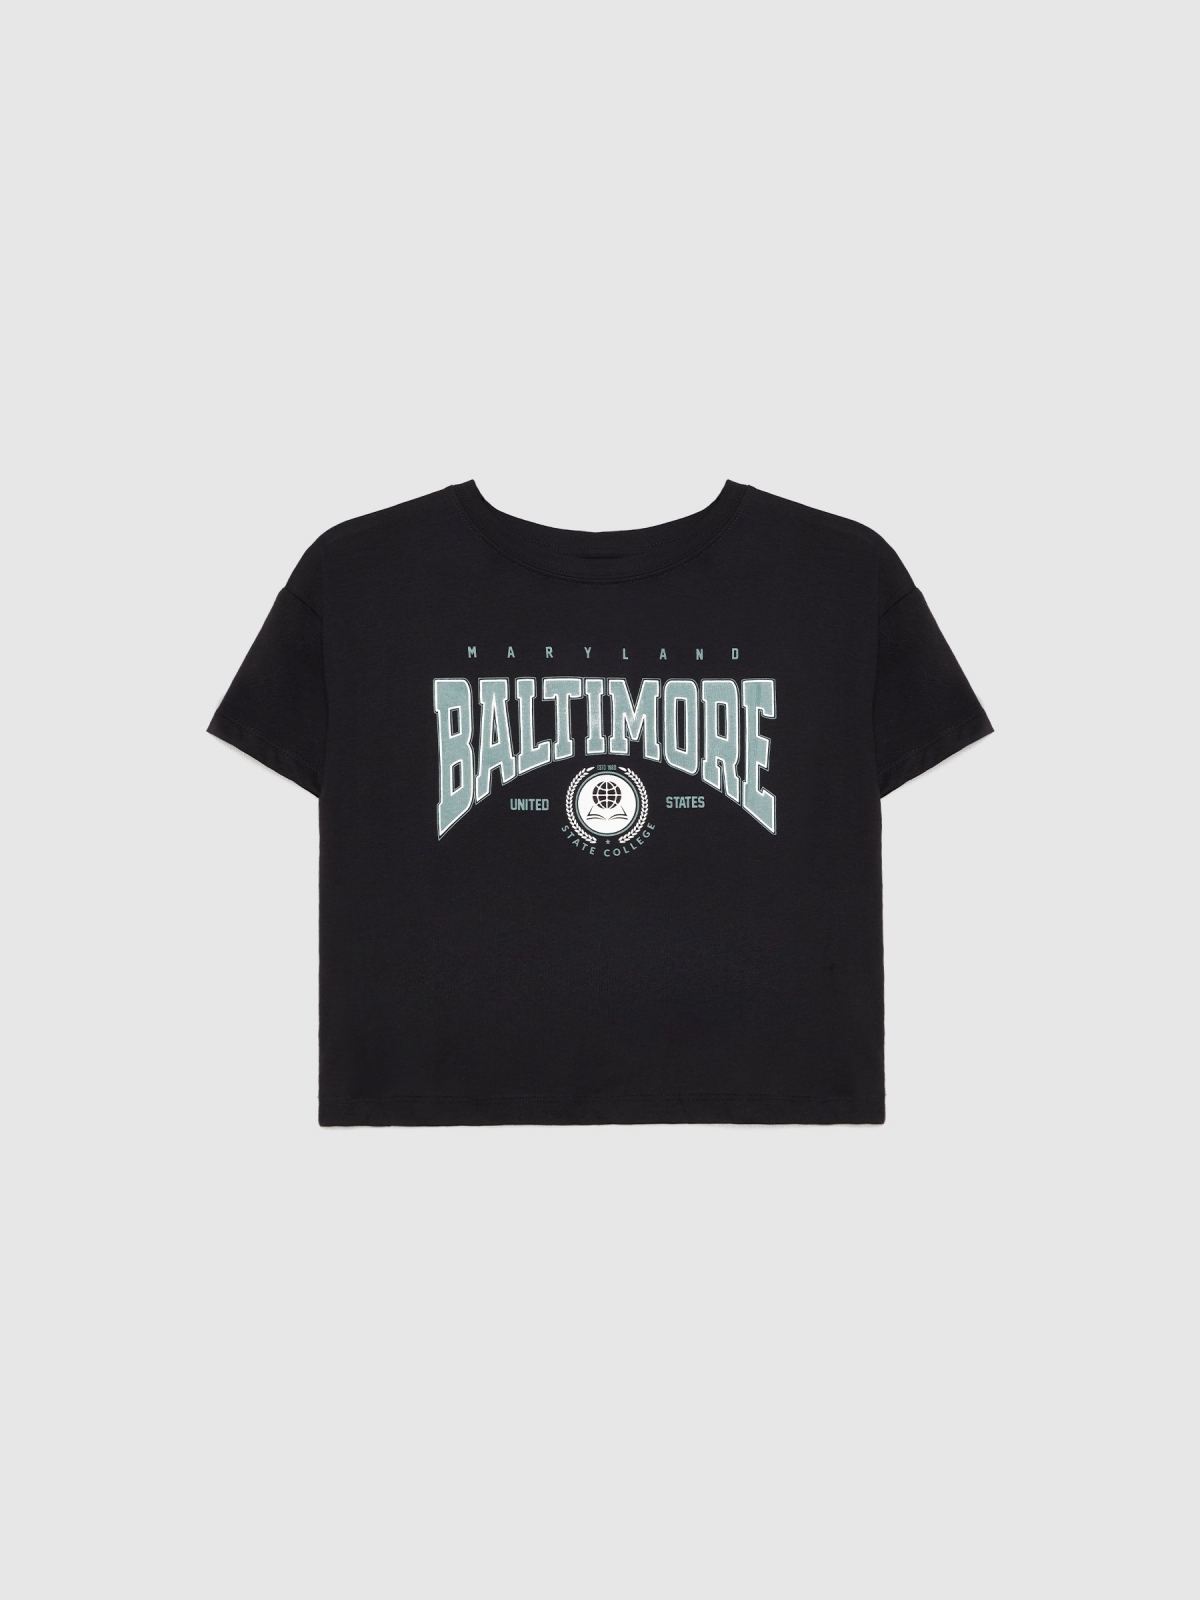  Baltimore t-shirt black